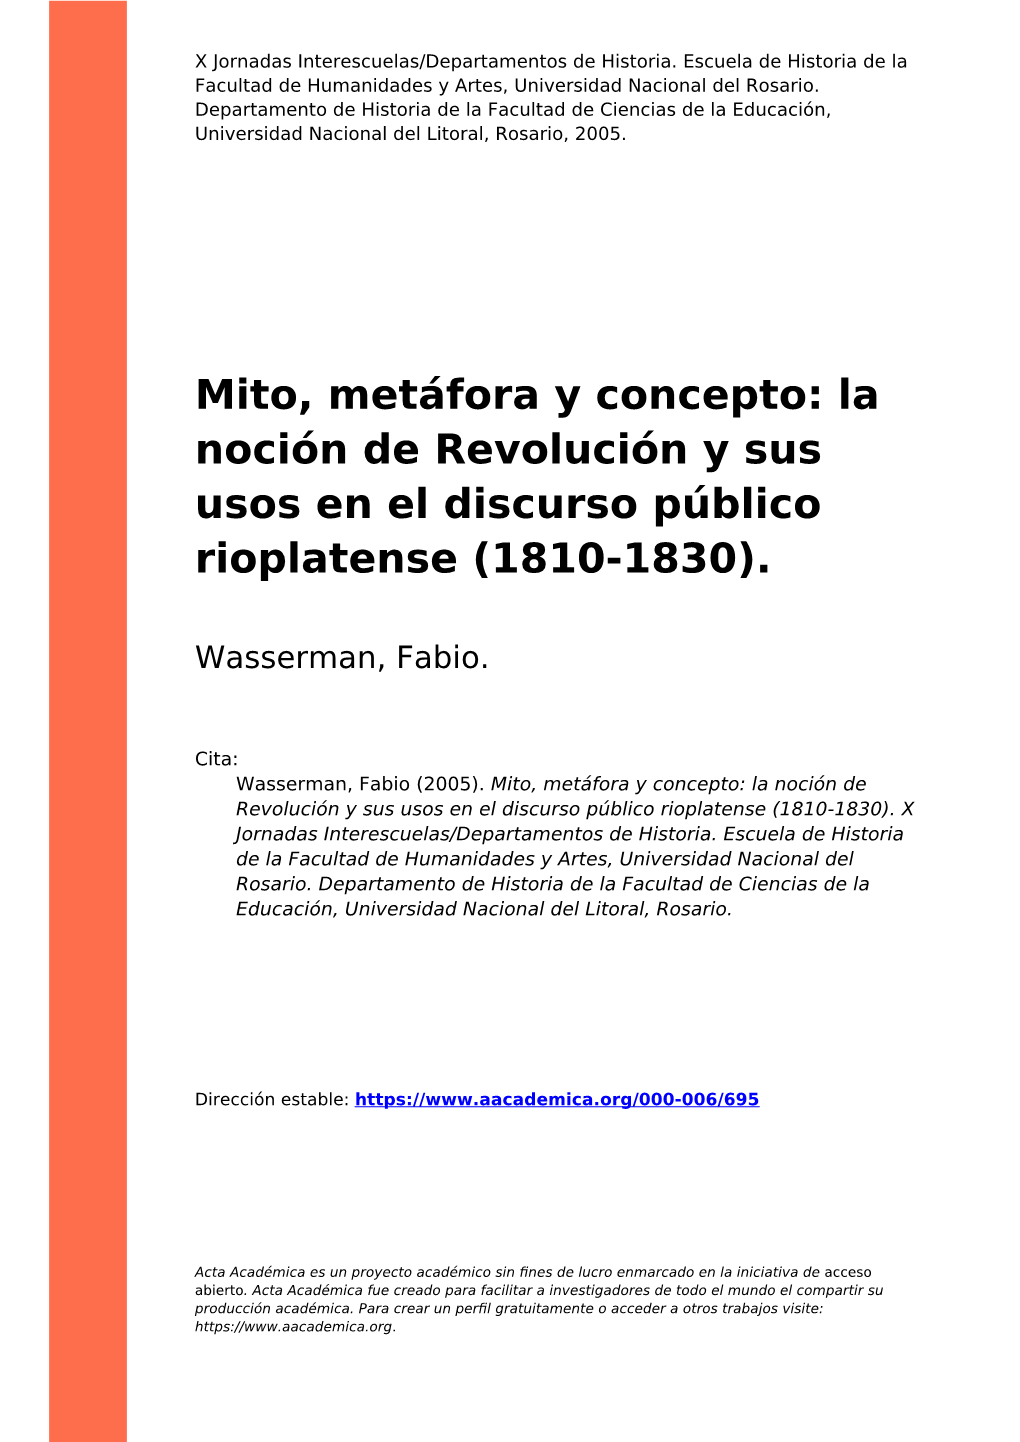 Mito, Metáfora Y Concepto: La Noción De Revolución Y Sus Usos En El Discurso Público Rioplatense (1810-1830)